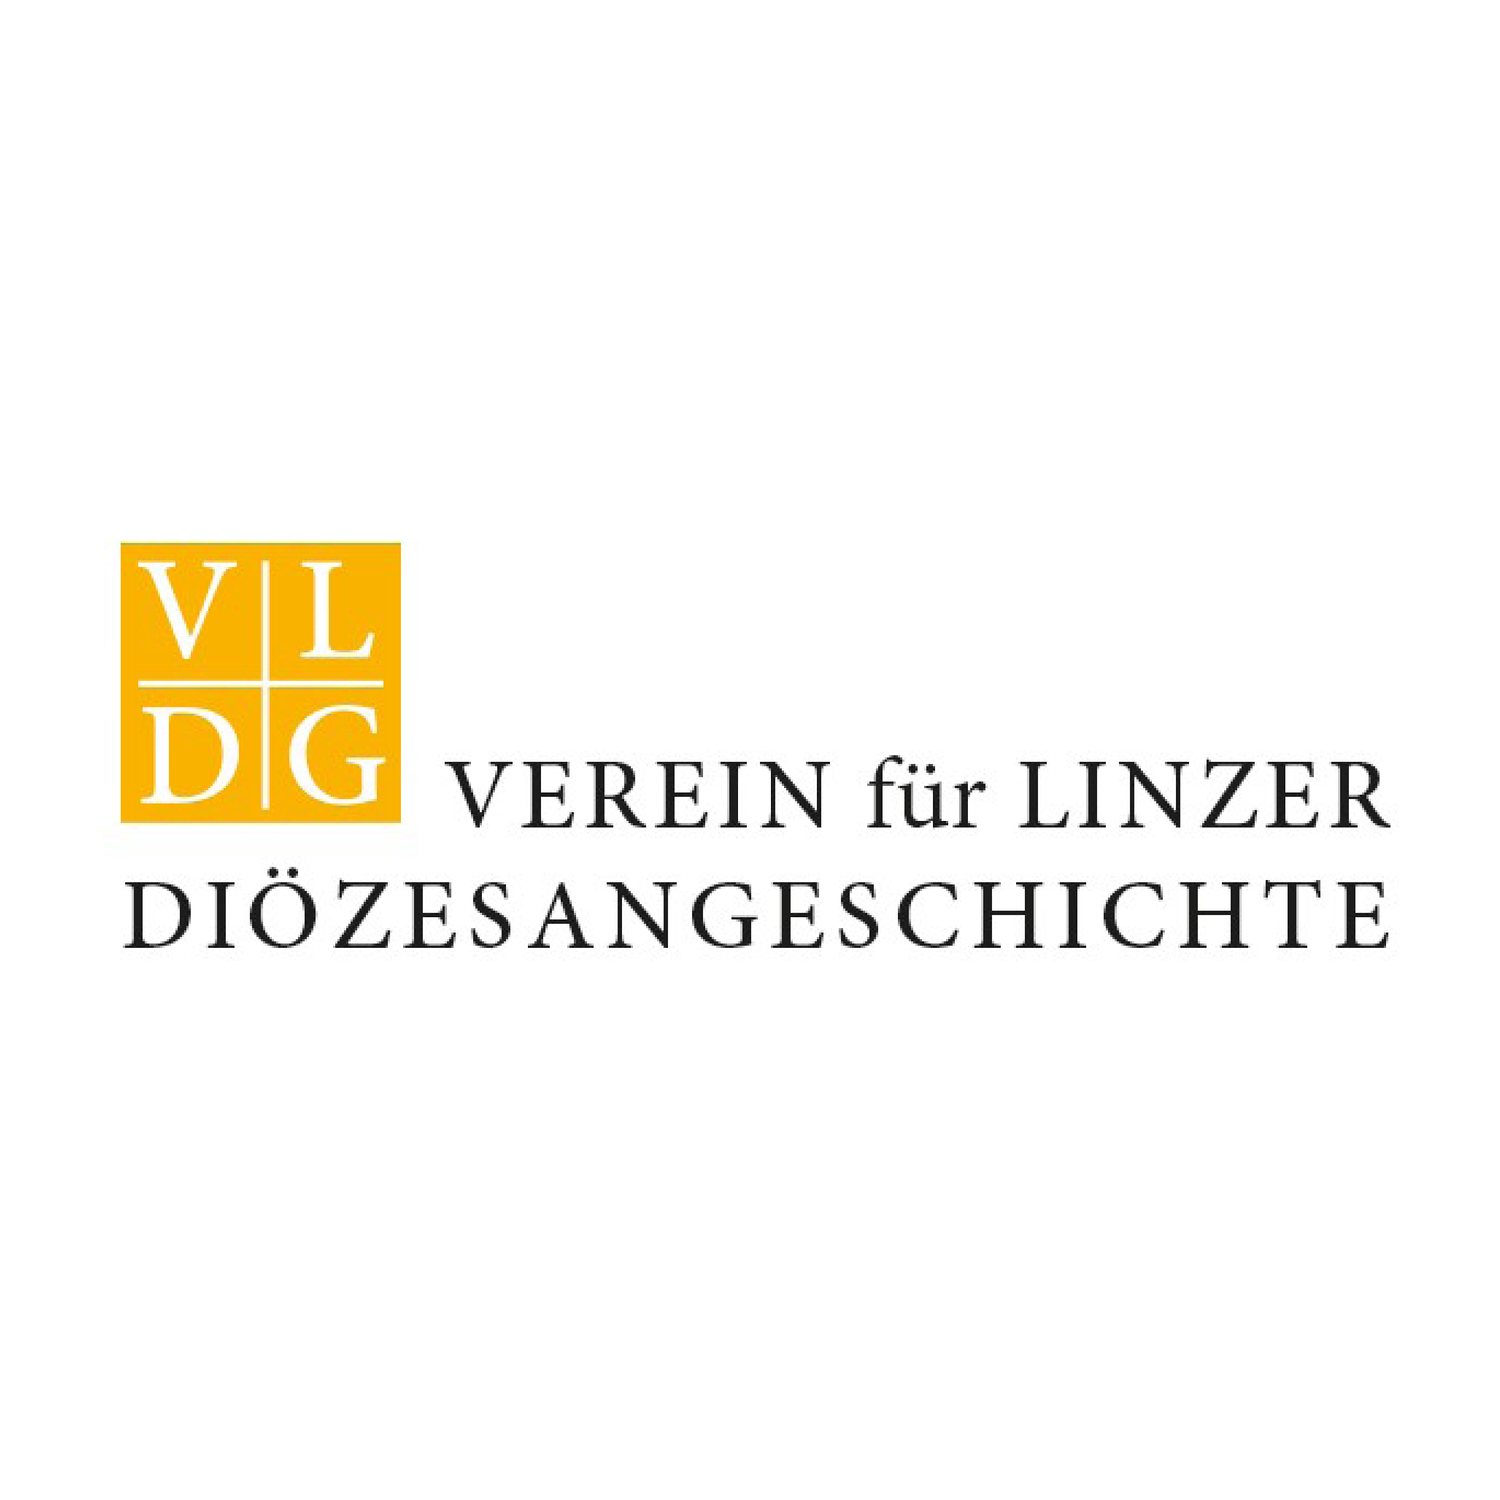 Verein für Linzer Diözesangeschichte